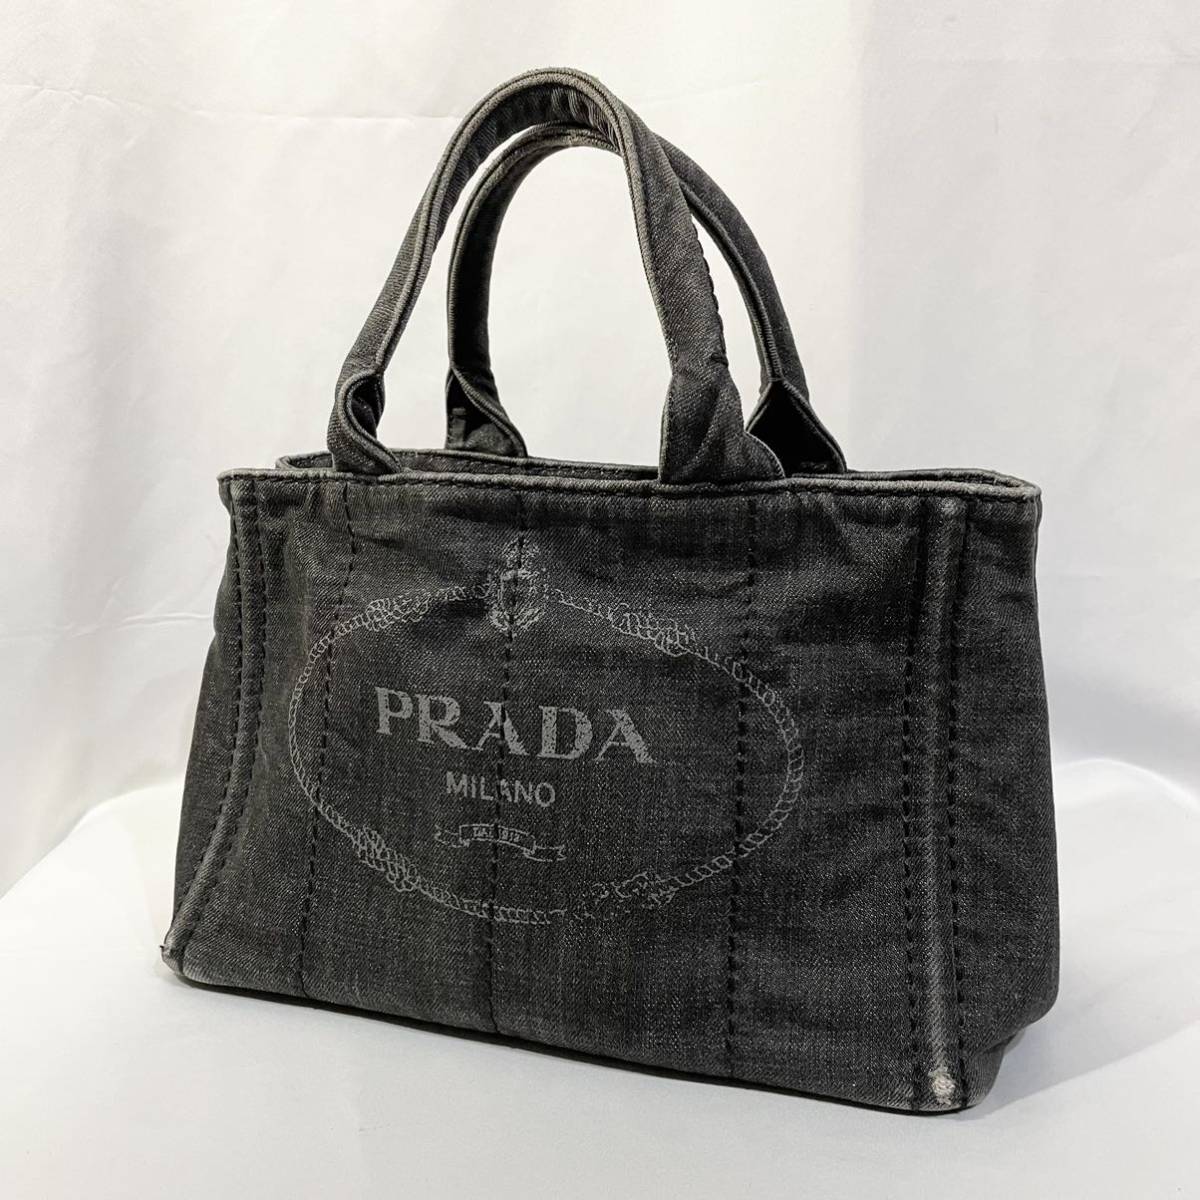 正規品 PRADA プラダ ハンドバッグ カナパ 黒 ブラック デニム 三角ロゴプレート トートバッグ キャンバス カバン 鞄